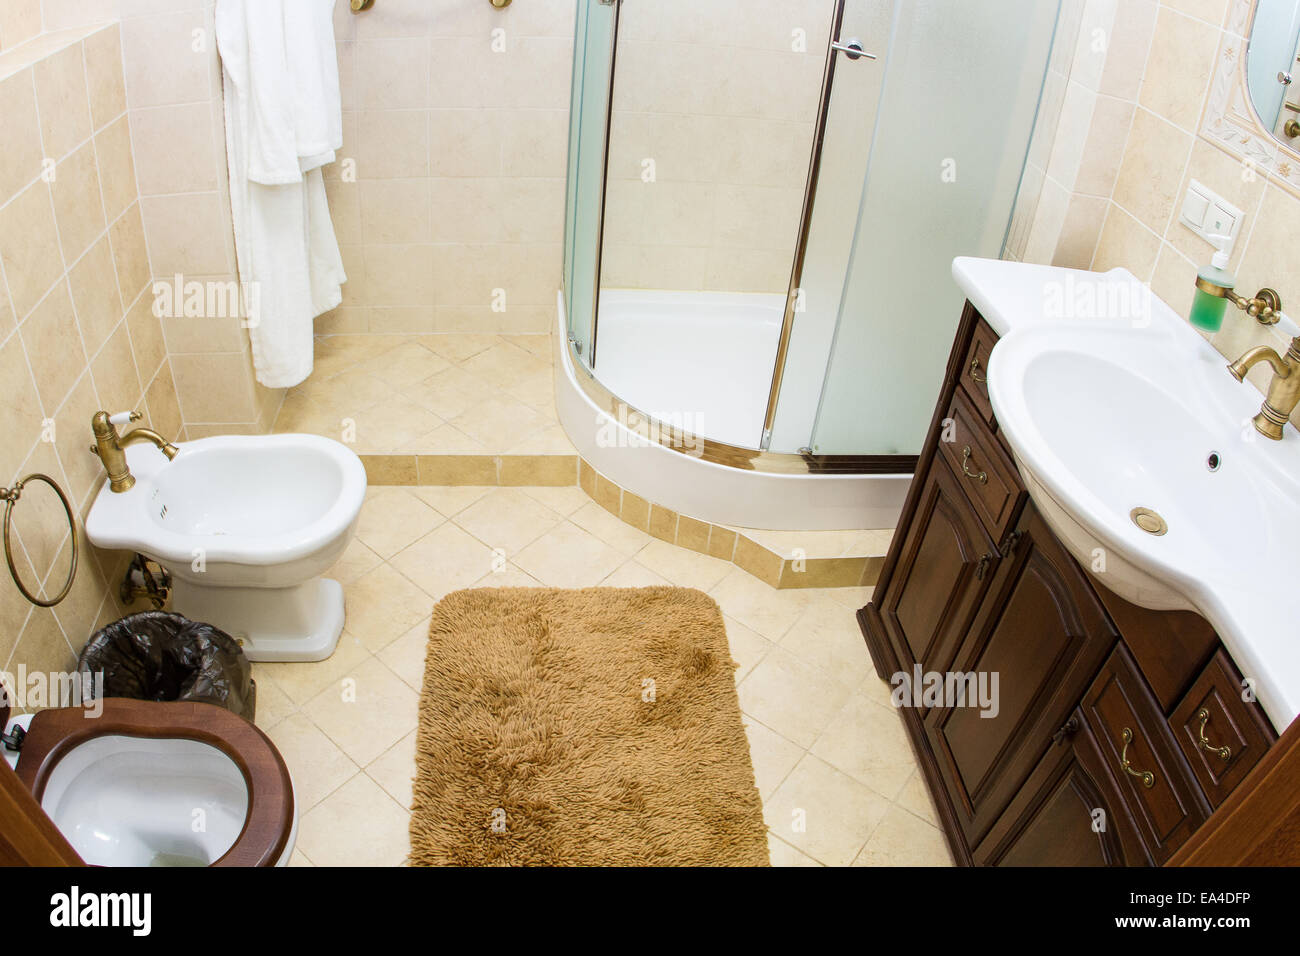 Salle de bains, WC, toilettes, wc prix interior design Banque D'Images